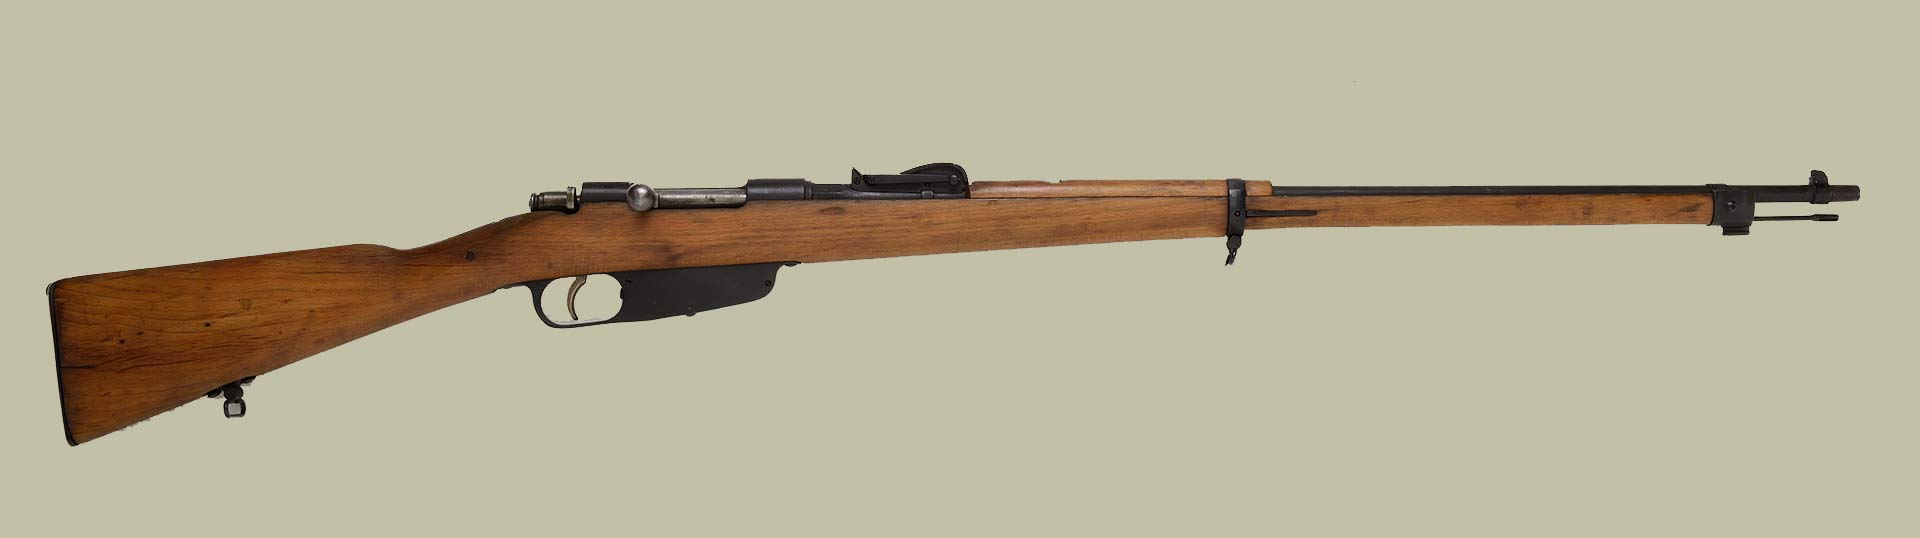 fucile-mod-1891